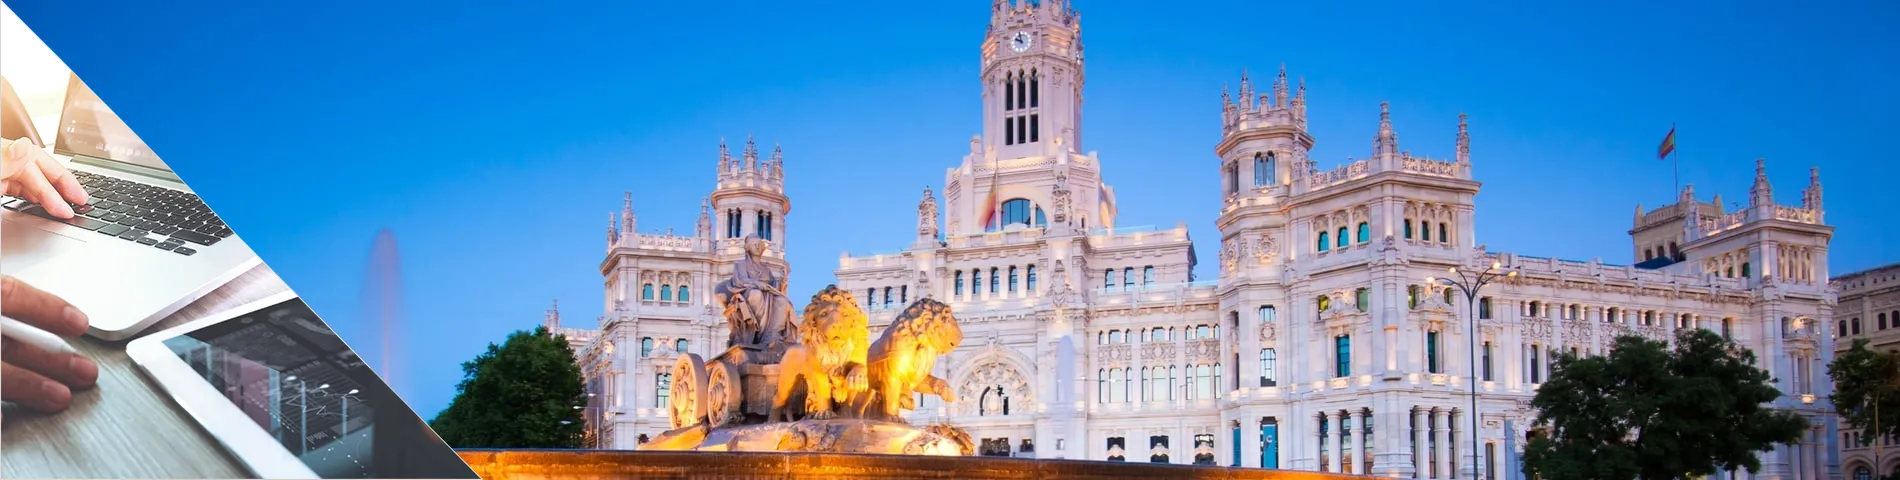 Madrid - Espagnol & Médias numériques